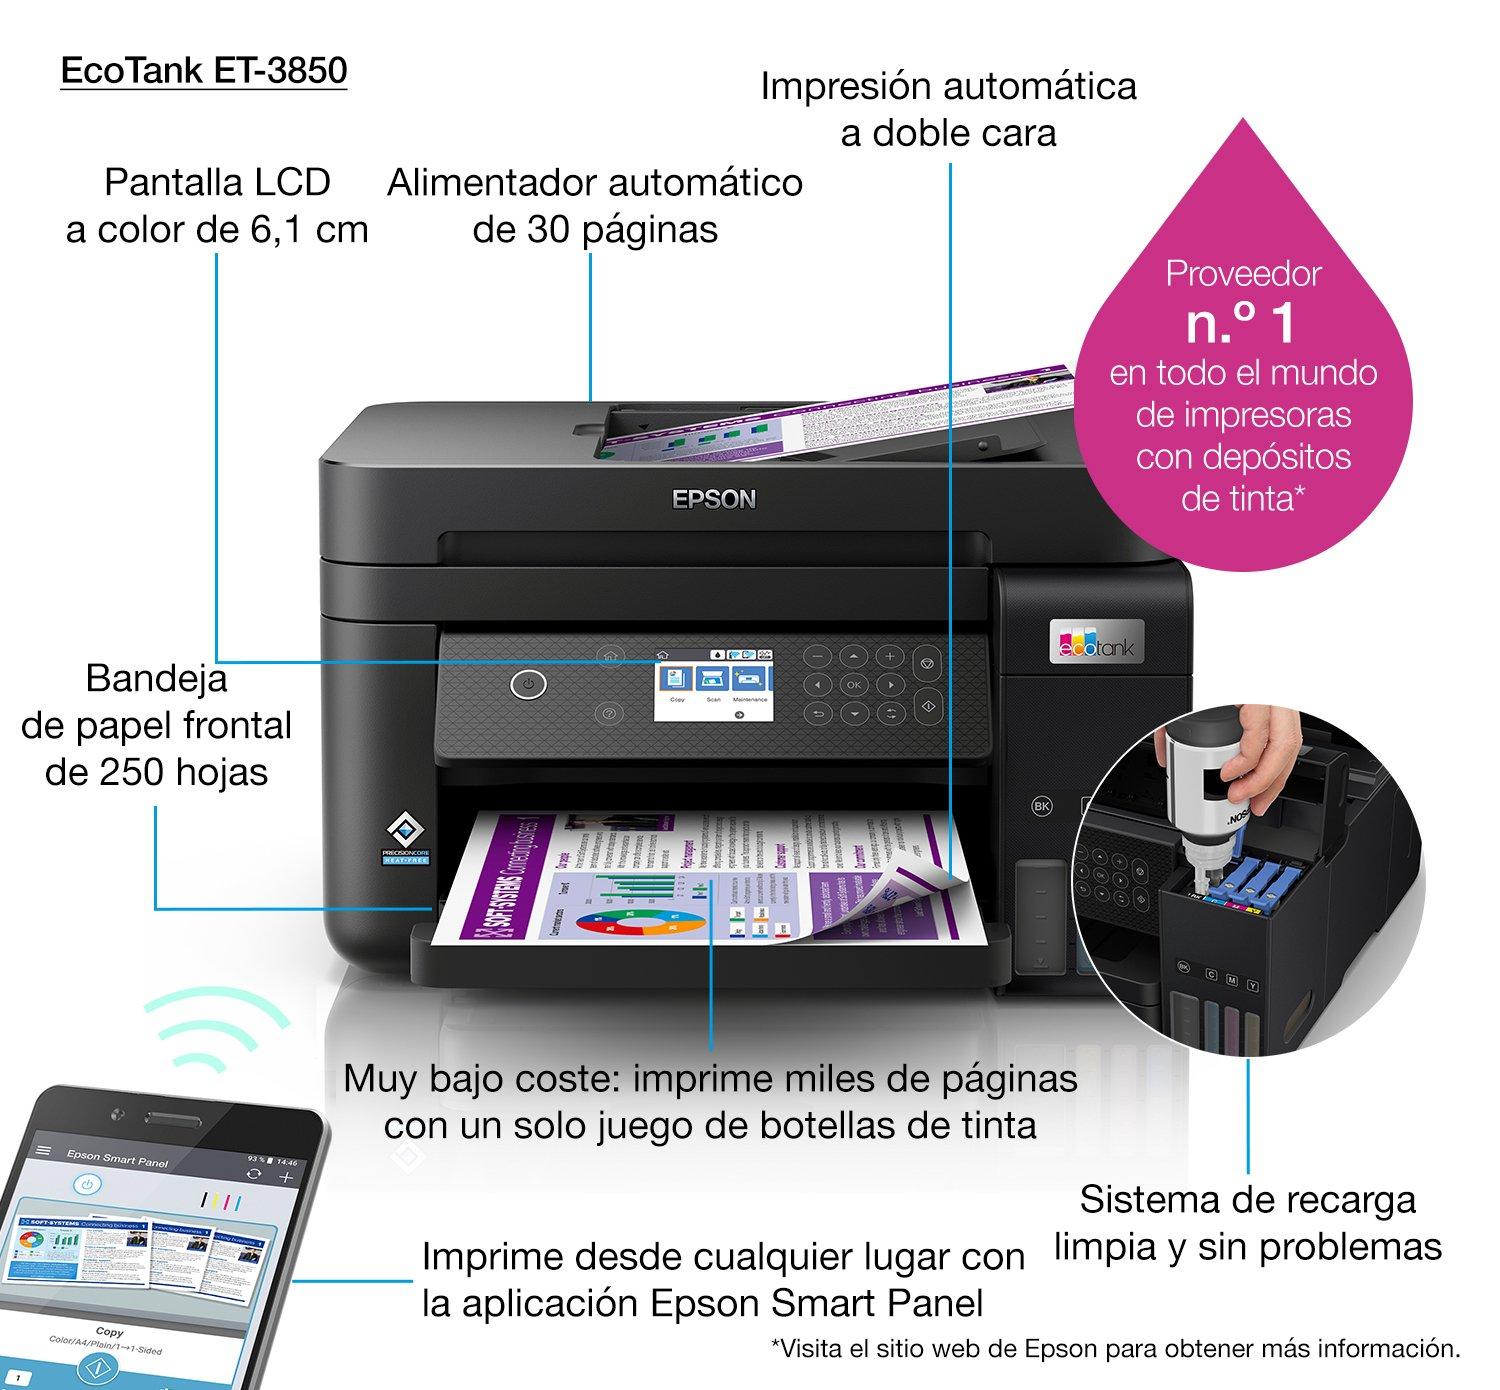 Epson EcoTank ET-3850 Impresora Supertank inalámbrica a color todo en uno  sin cartuchos con escáner, copiadora, ADF y Ethernet, la impresora perfecta